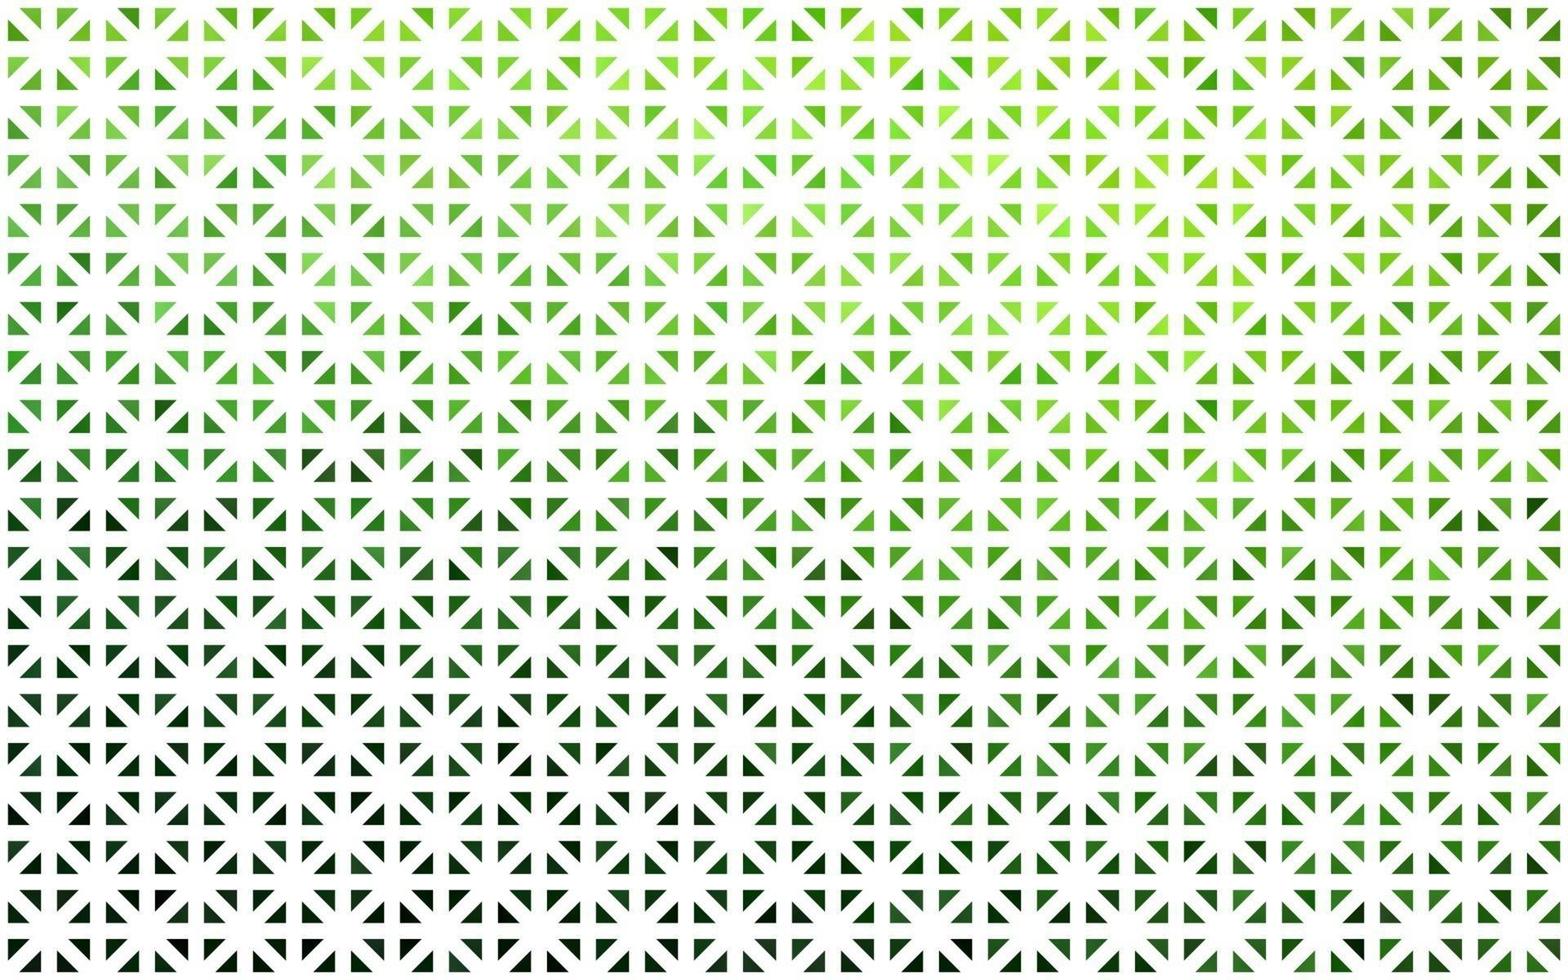 texture vettoriale verde chiaro in stile triangolare.